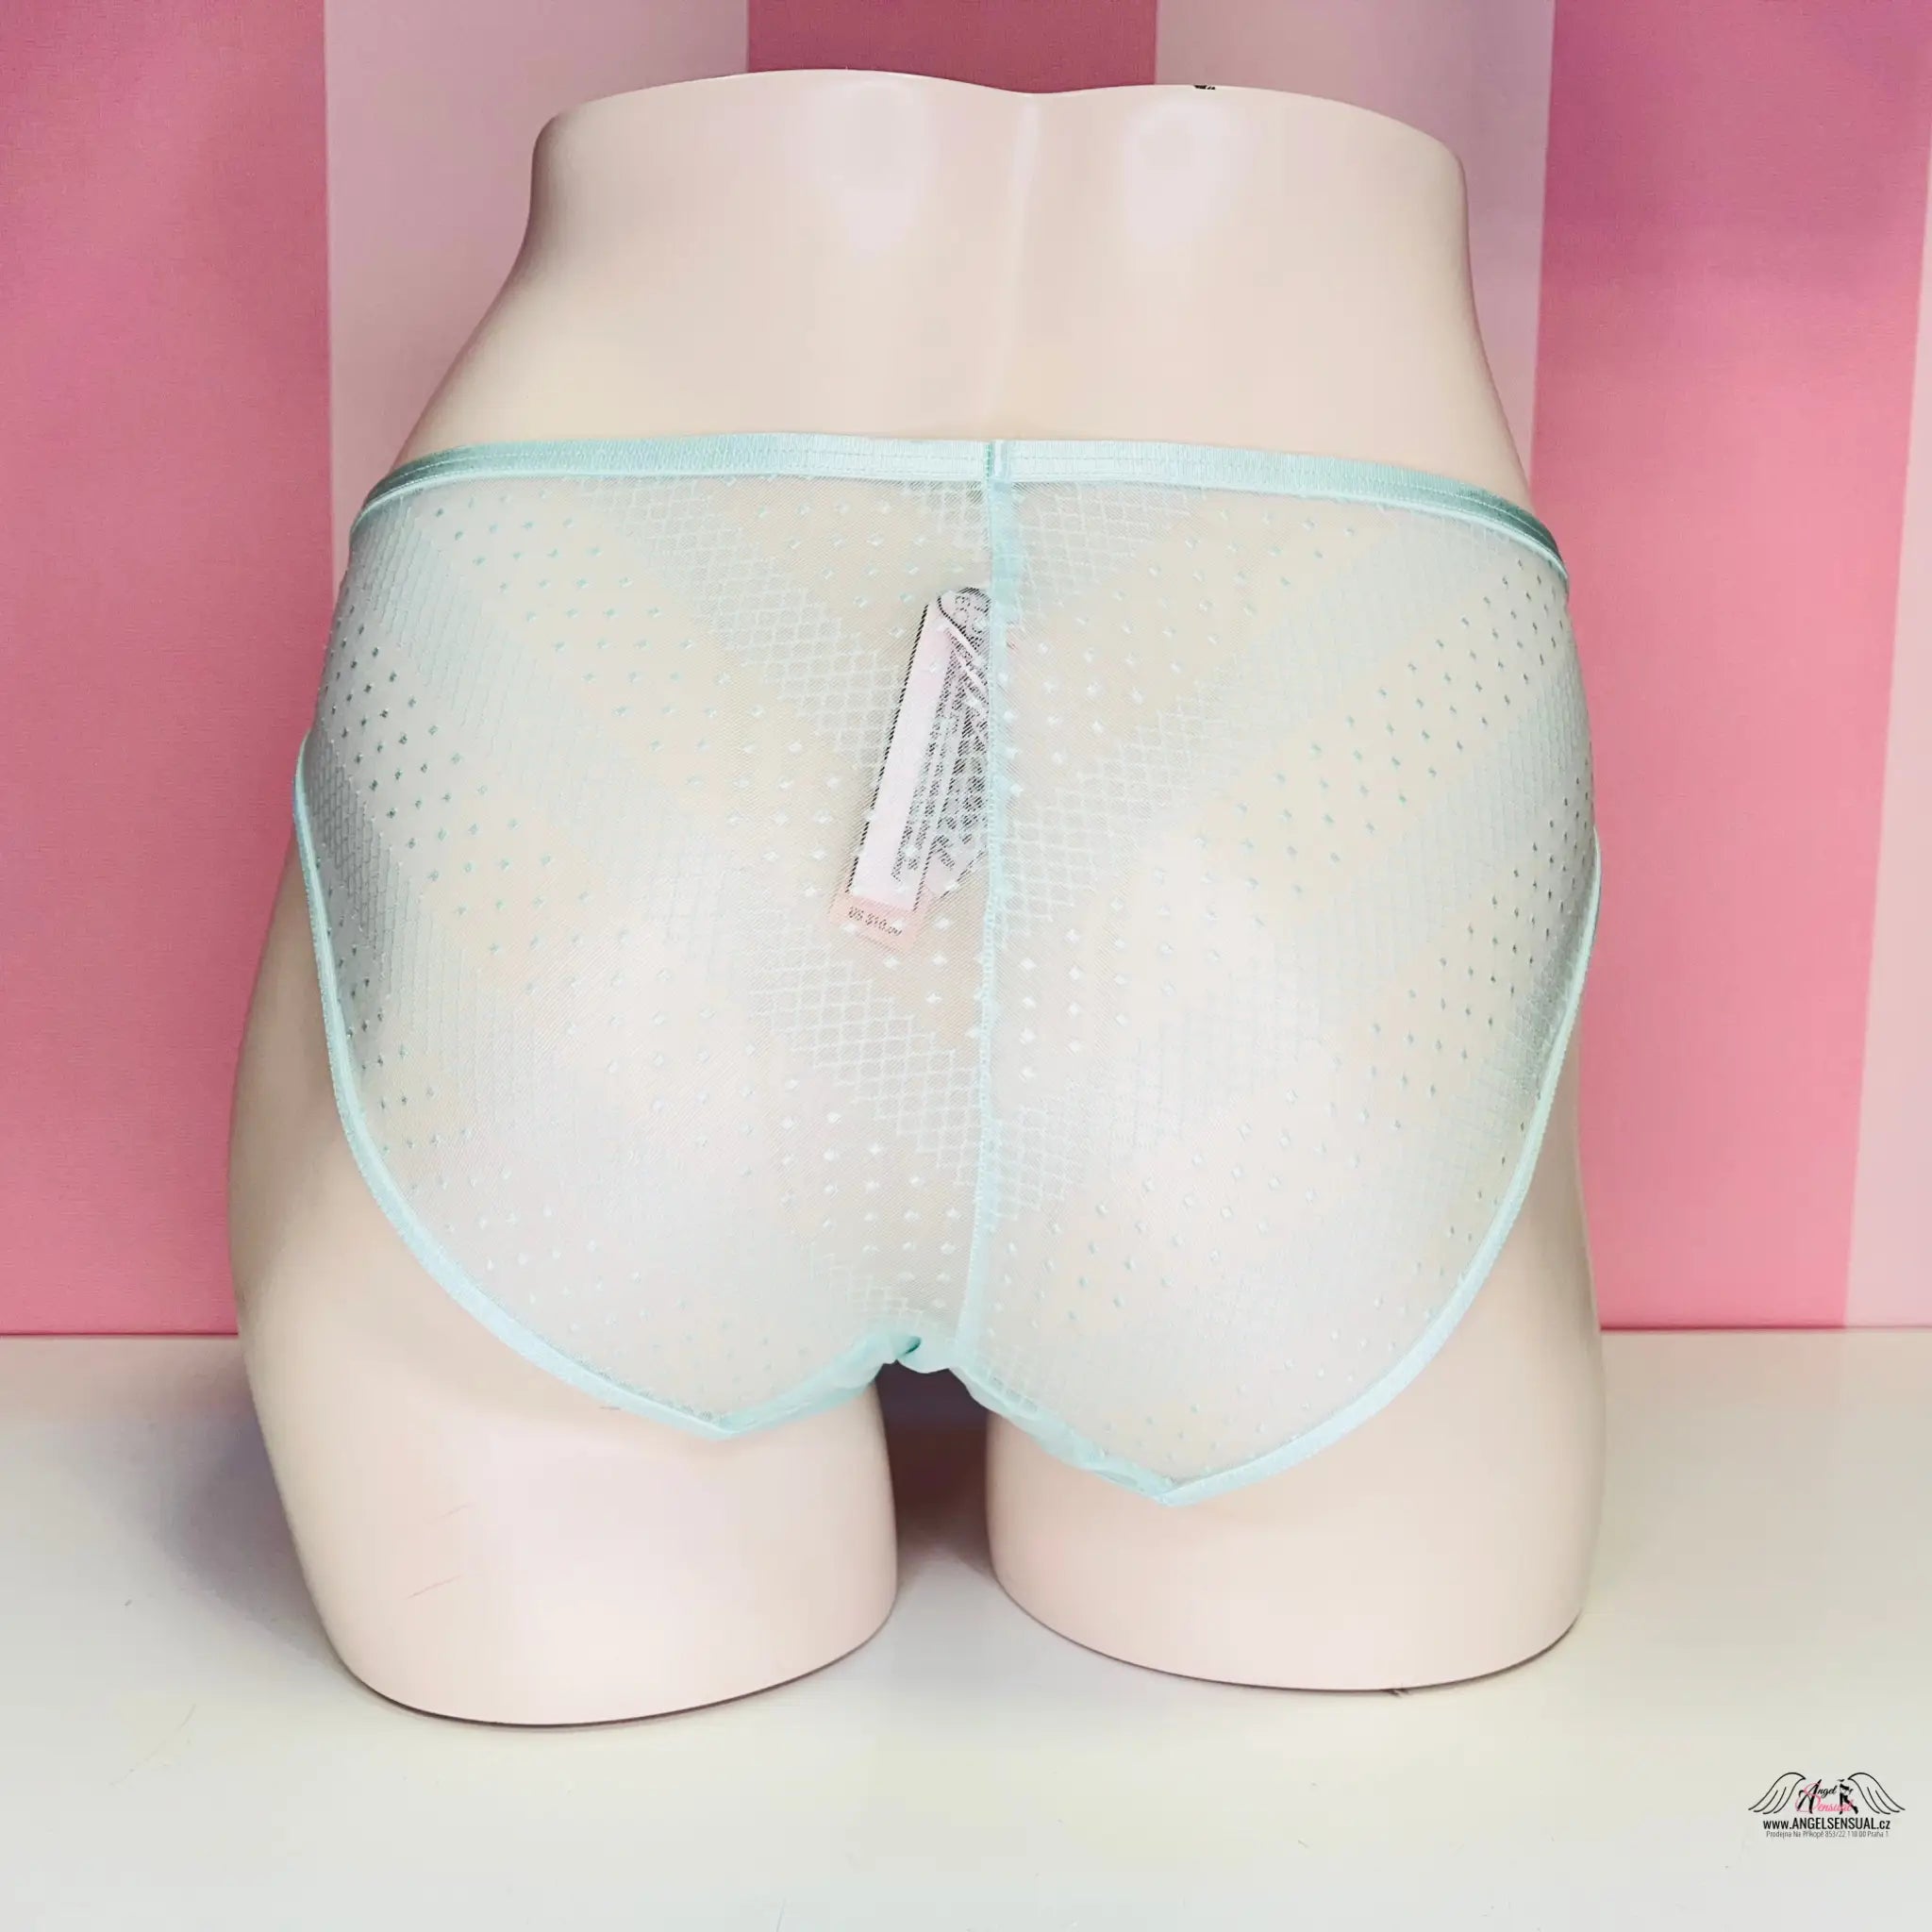 Vzdušné kalhotky - Modrá / M / Nové se štítky - Kalhotky Victoria’s Secret